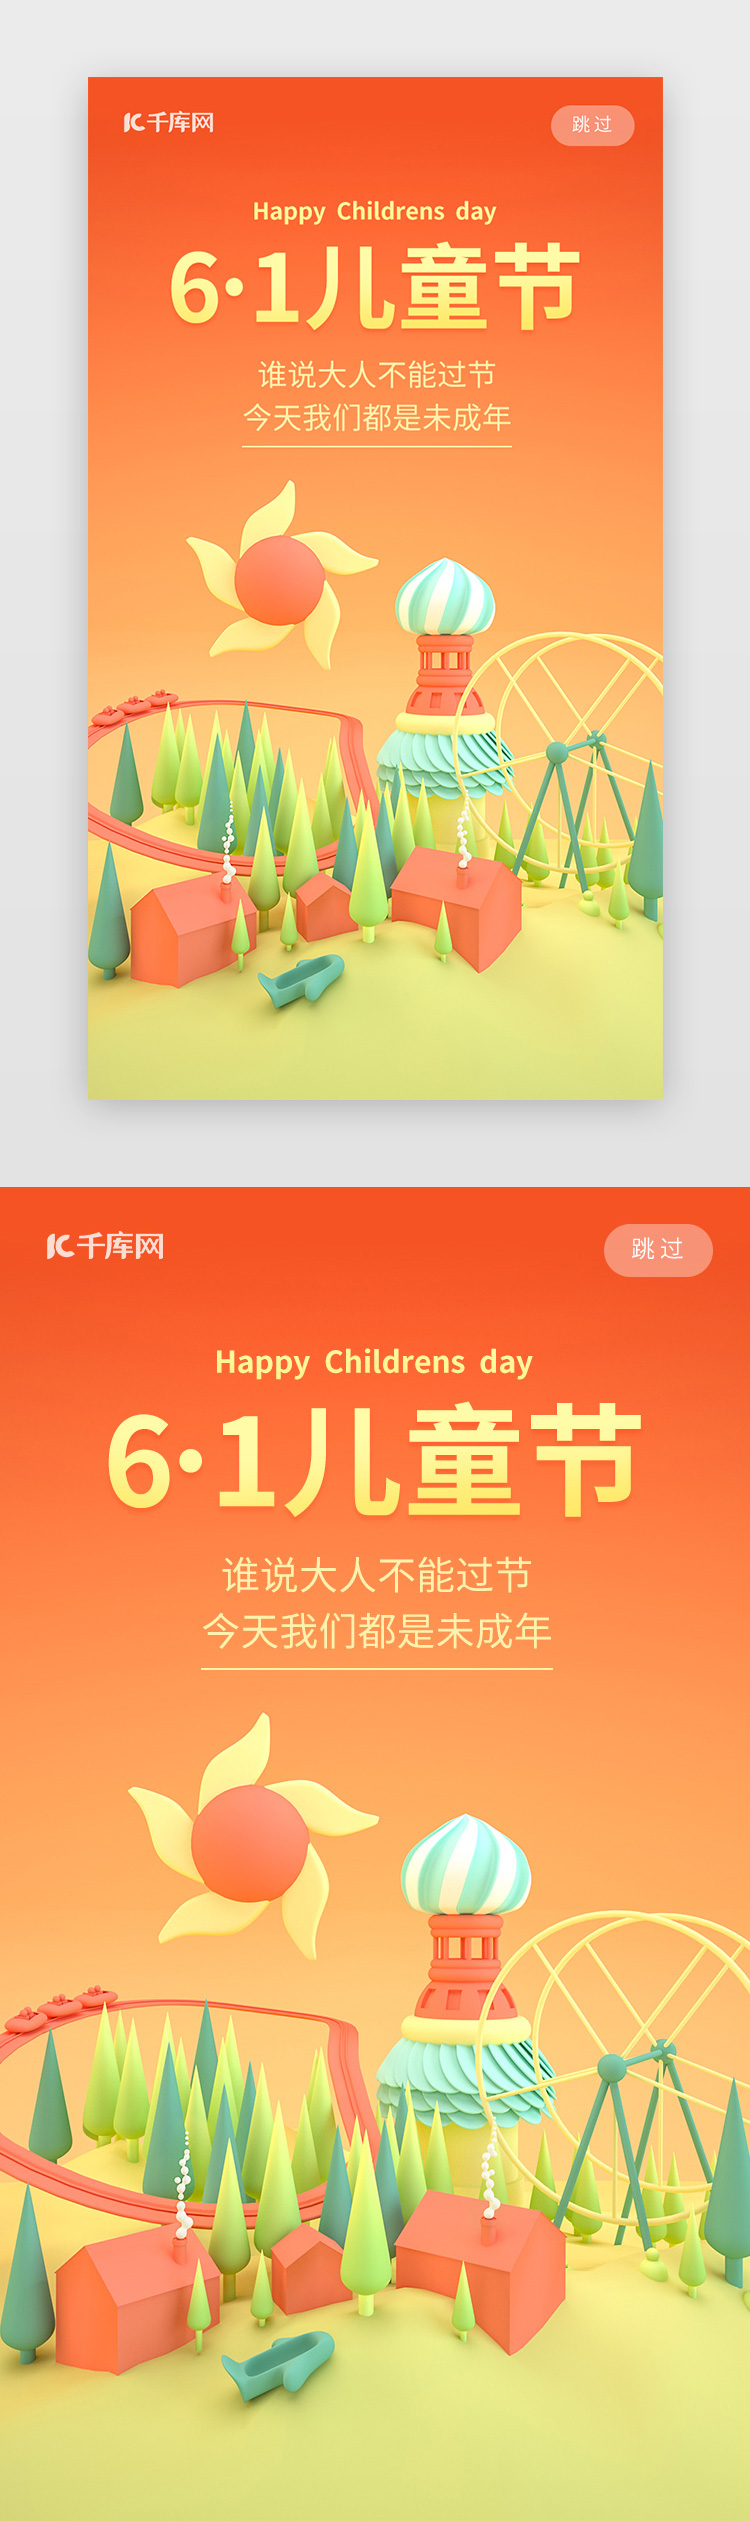 欢乐61儿童节快乐手机闪屏启动页引导图片